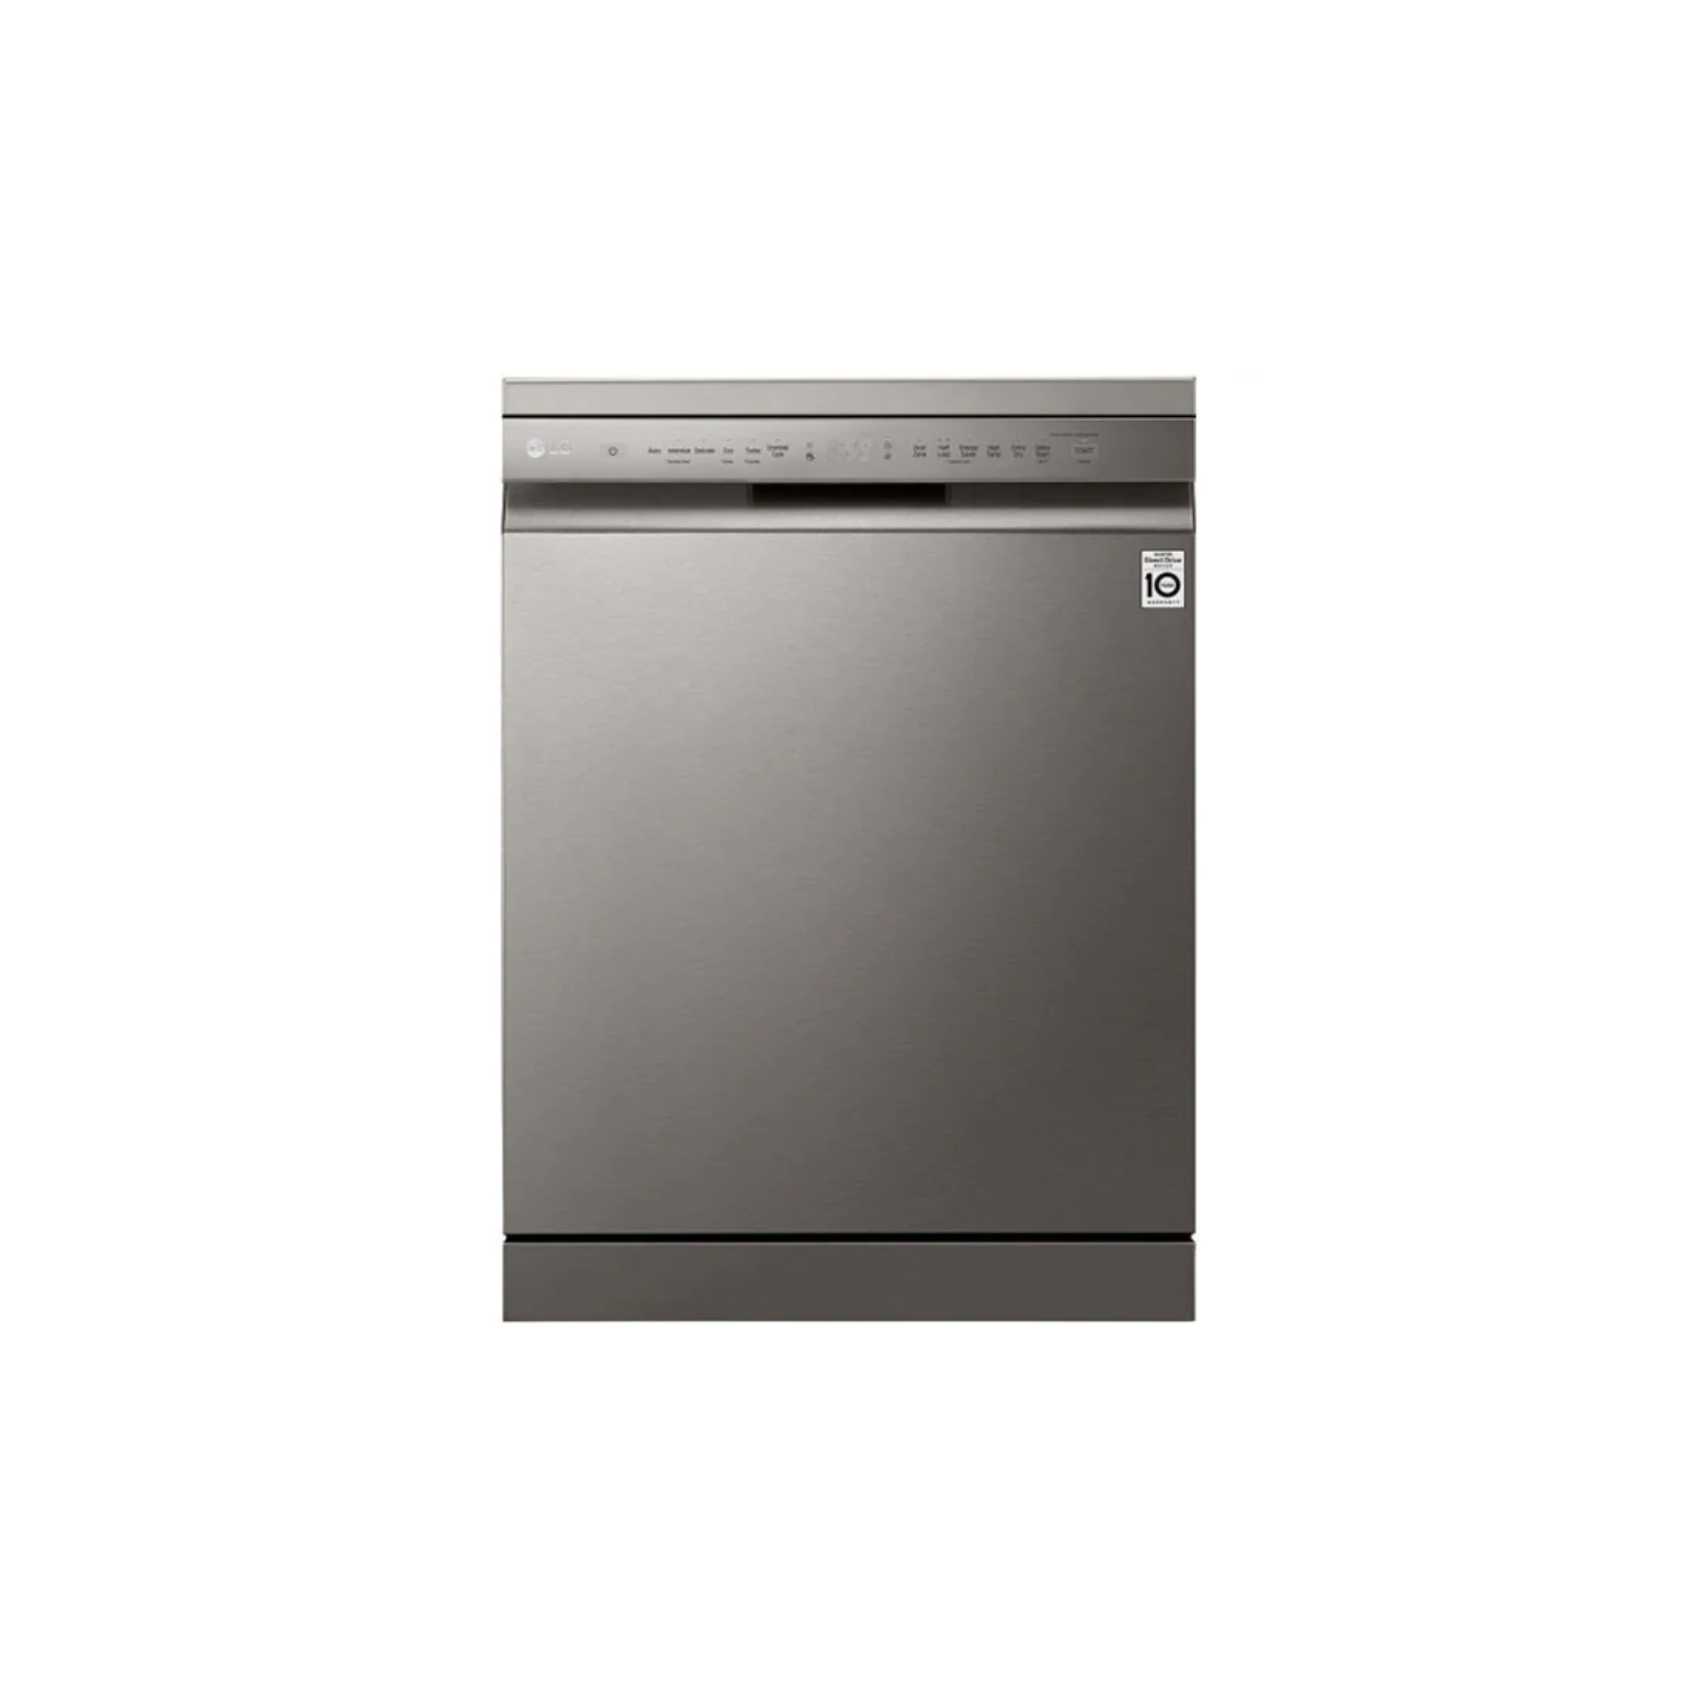 LG DFB512FP QuadWash Dishwasher